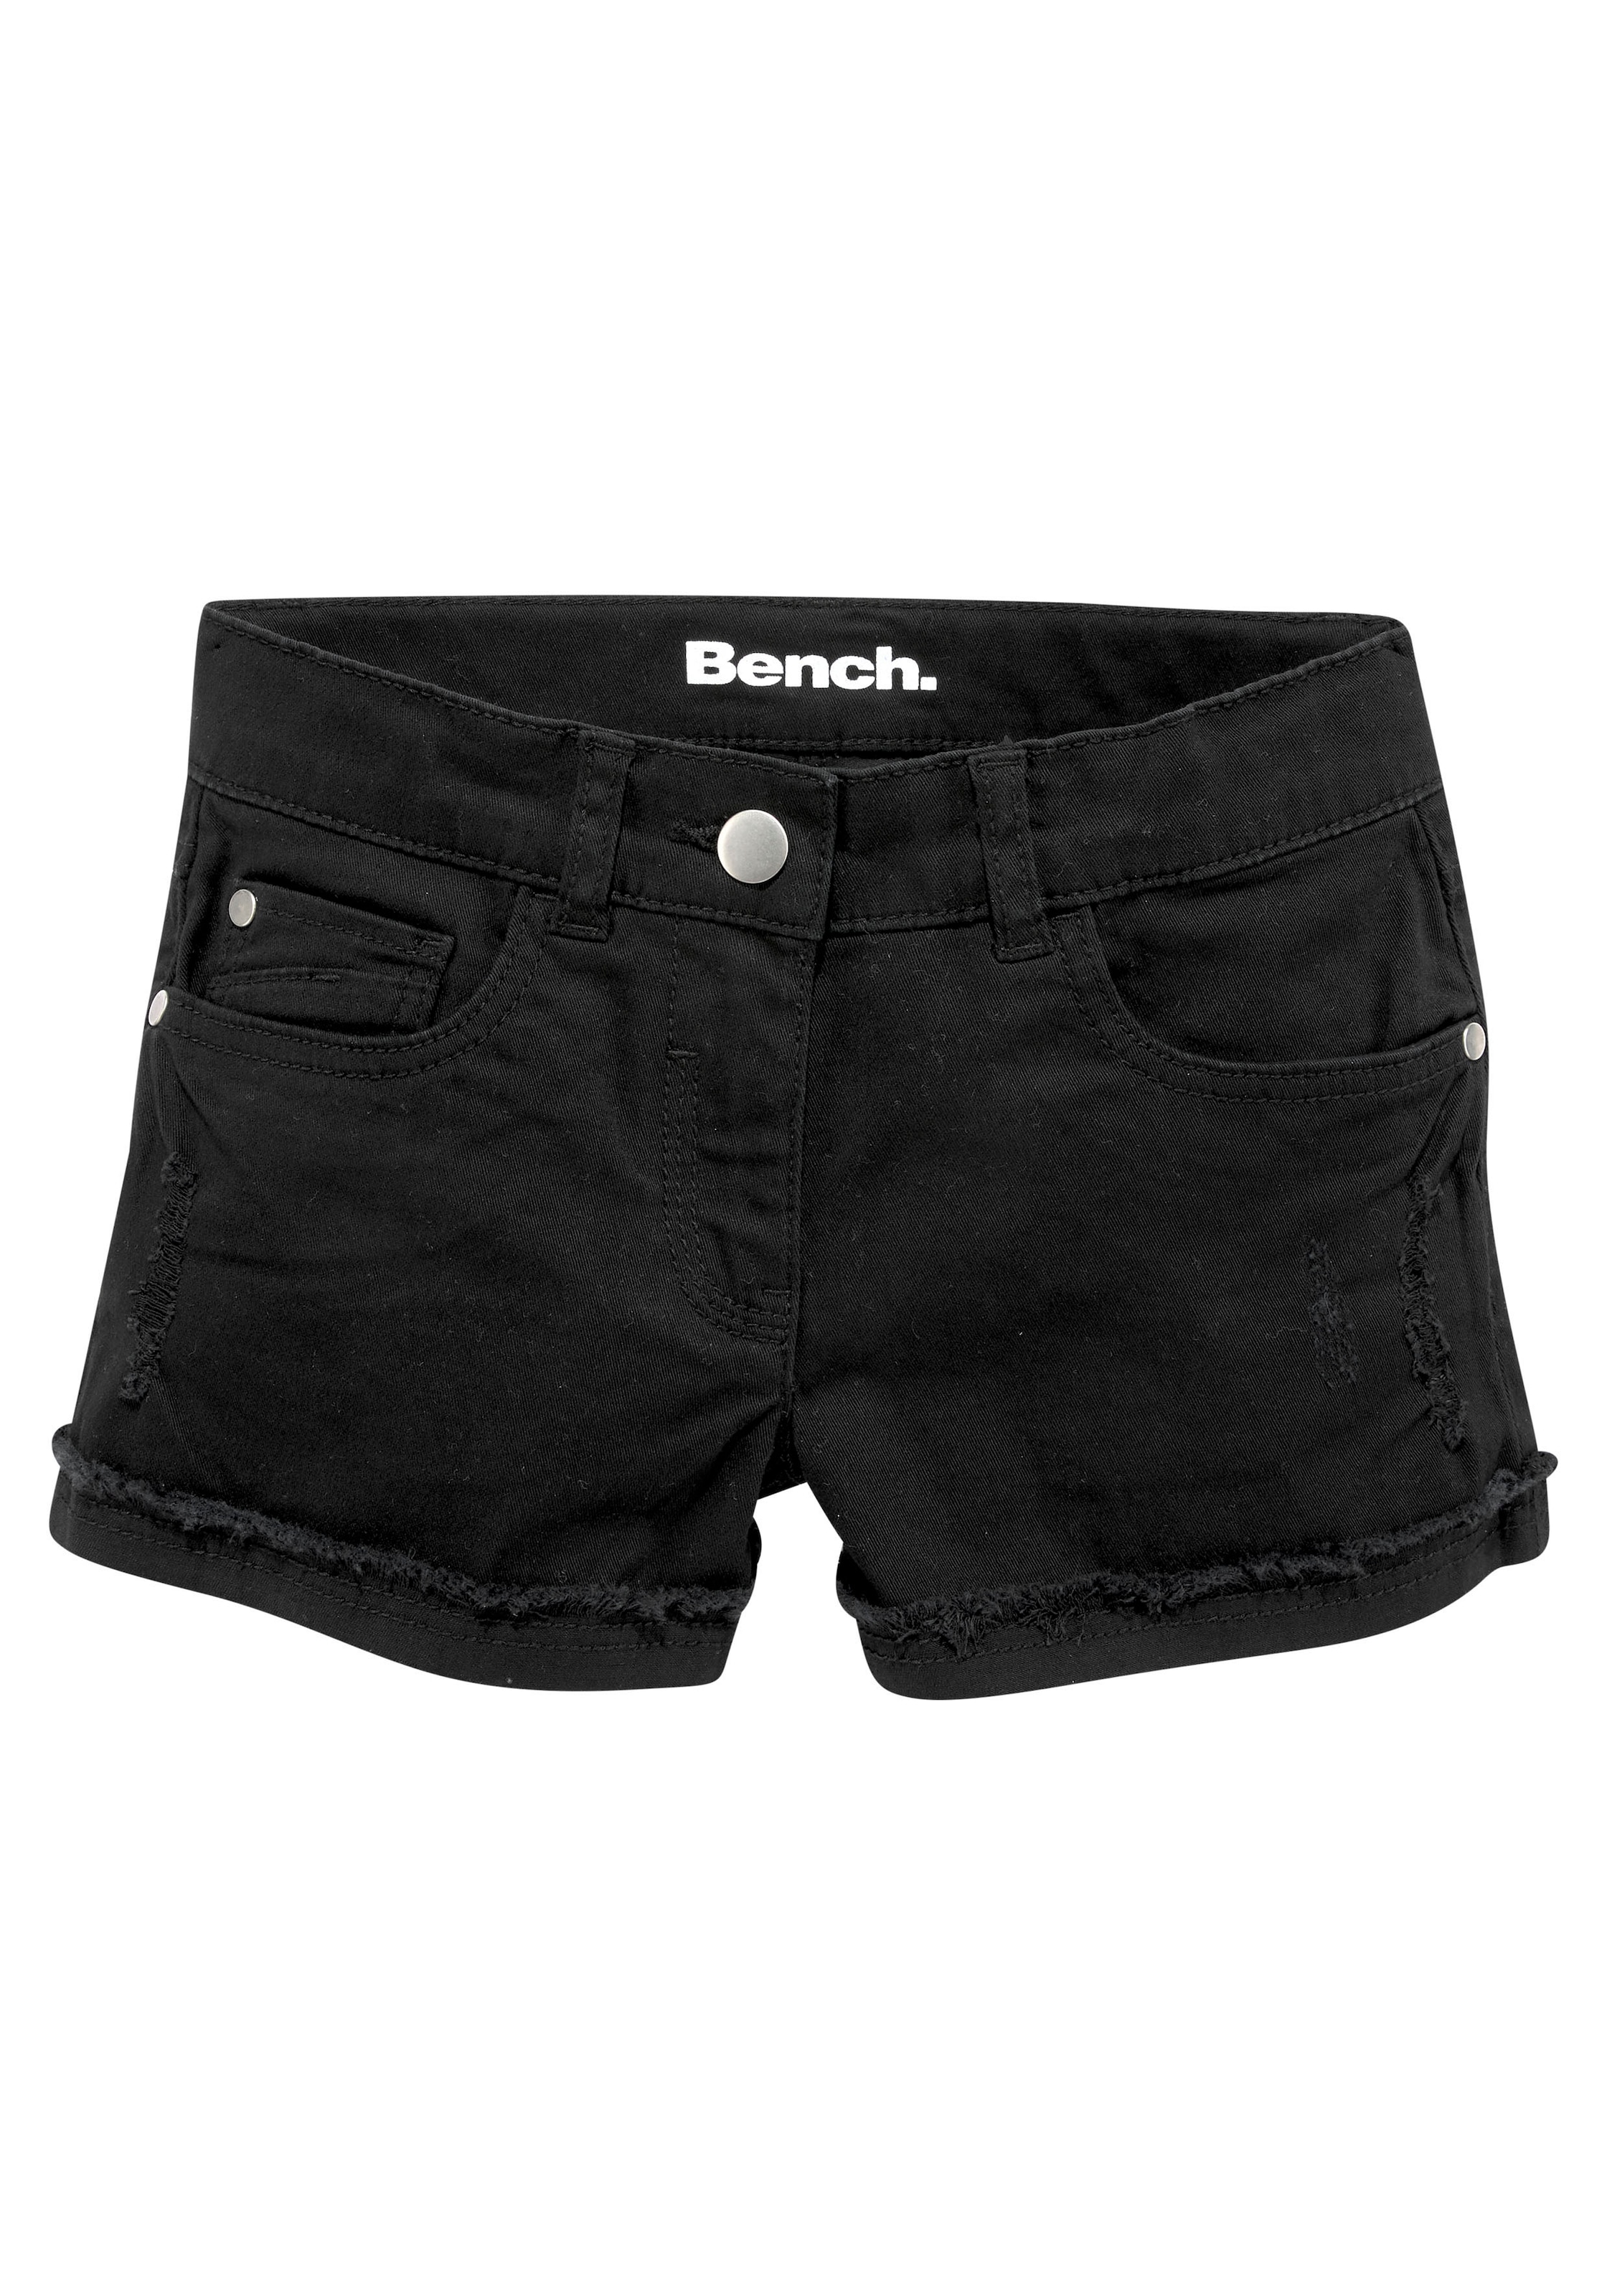 Abriebeffekten Shorts, mit im Bench. dezenten Online-Shop kaufen